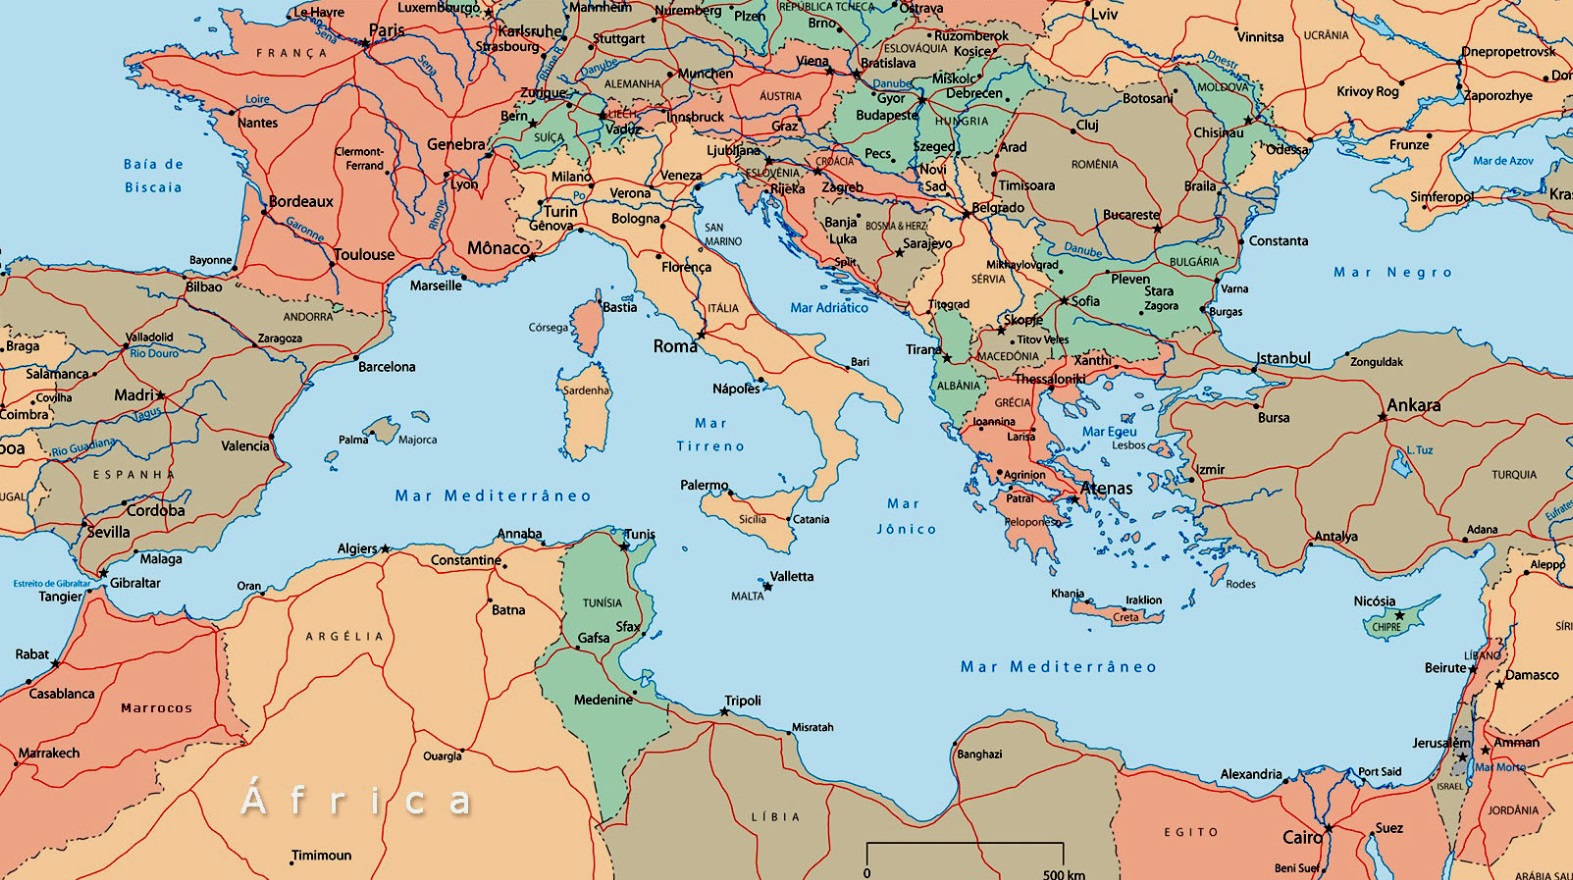 Europa si, Europa no? Meglio uscire dagli schemi decisi da altri e puntare su un’aggregazione più armonica con l’Italia: un’alleanza Mediterranea